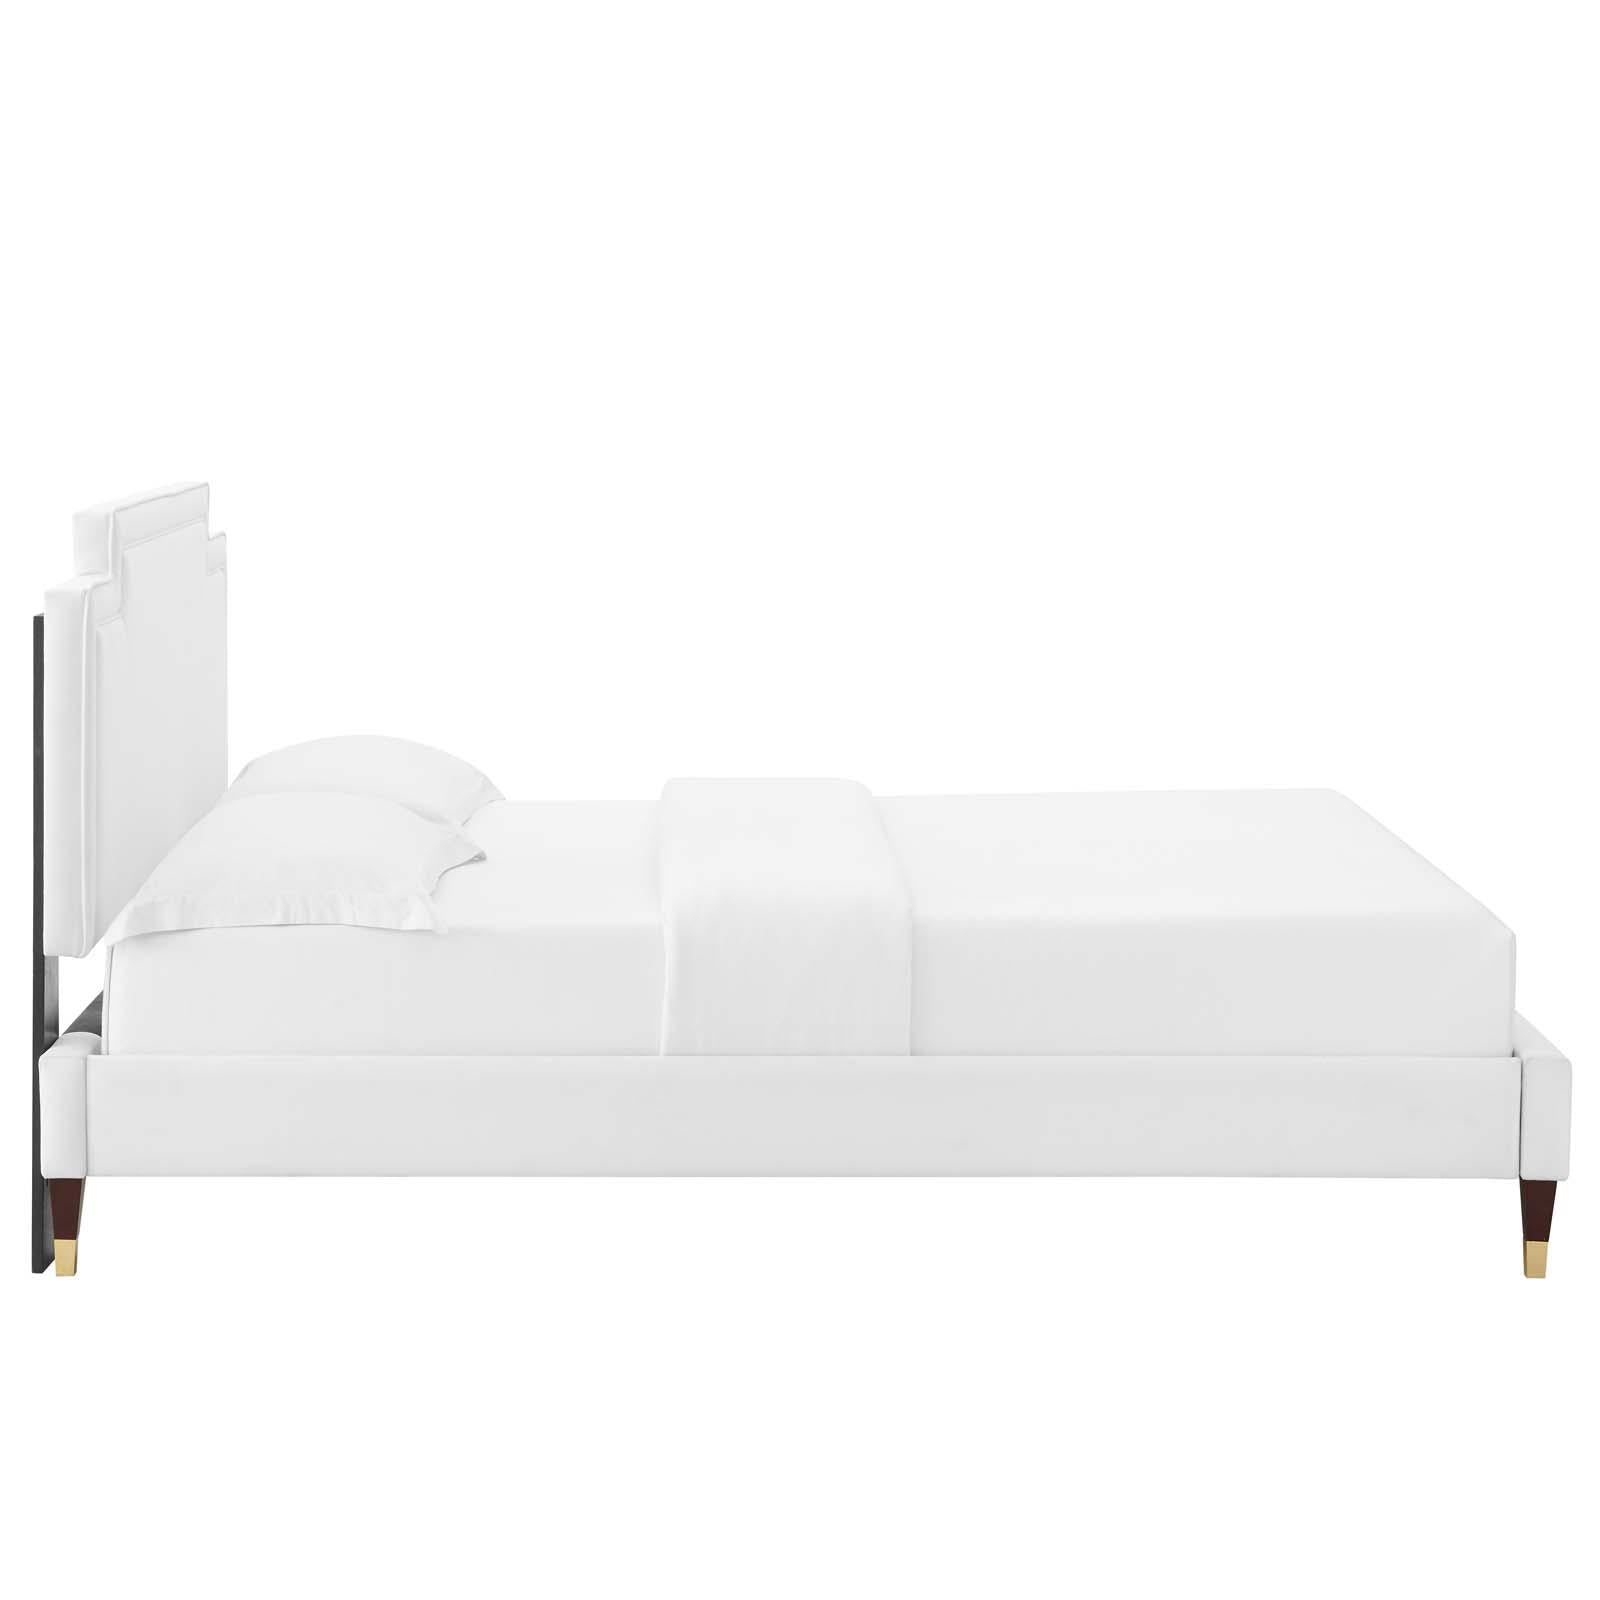 Modway Furniture Modern Liva Performance Velvet King Bed - MOD-6841